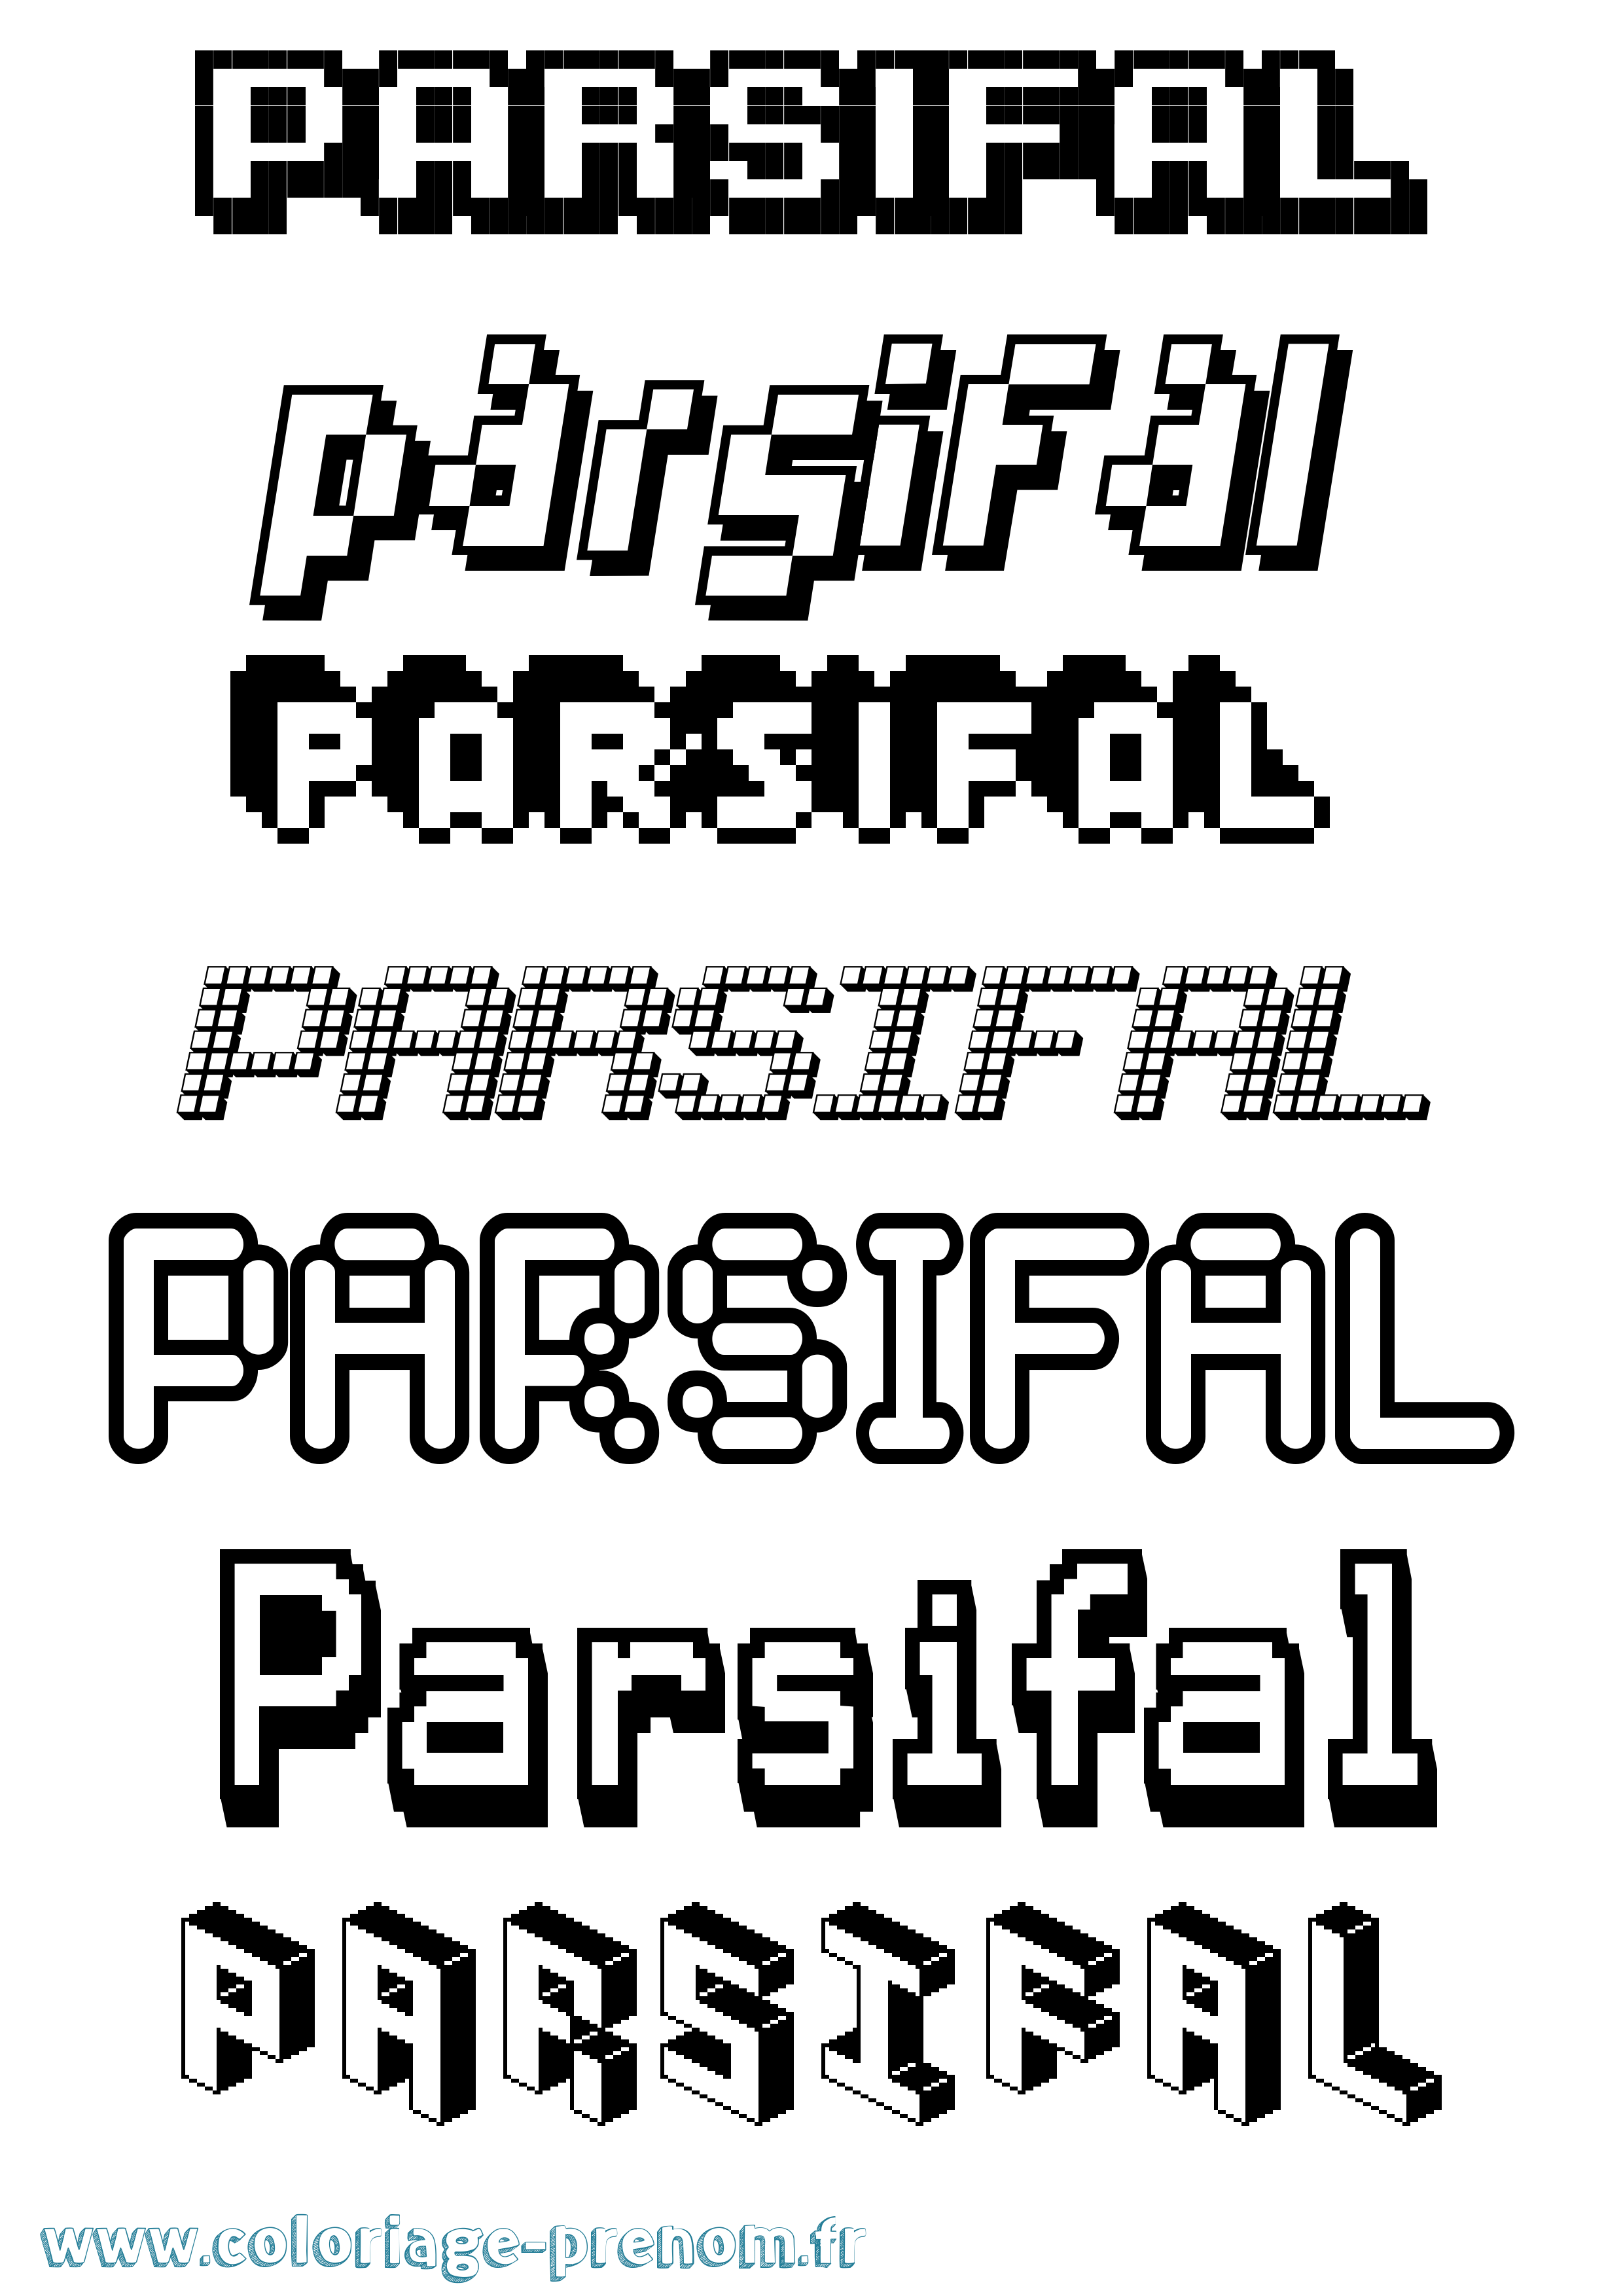 Coloriage prénom Parsifal Pixel